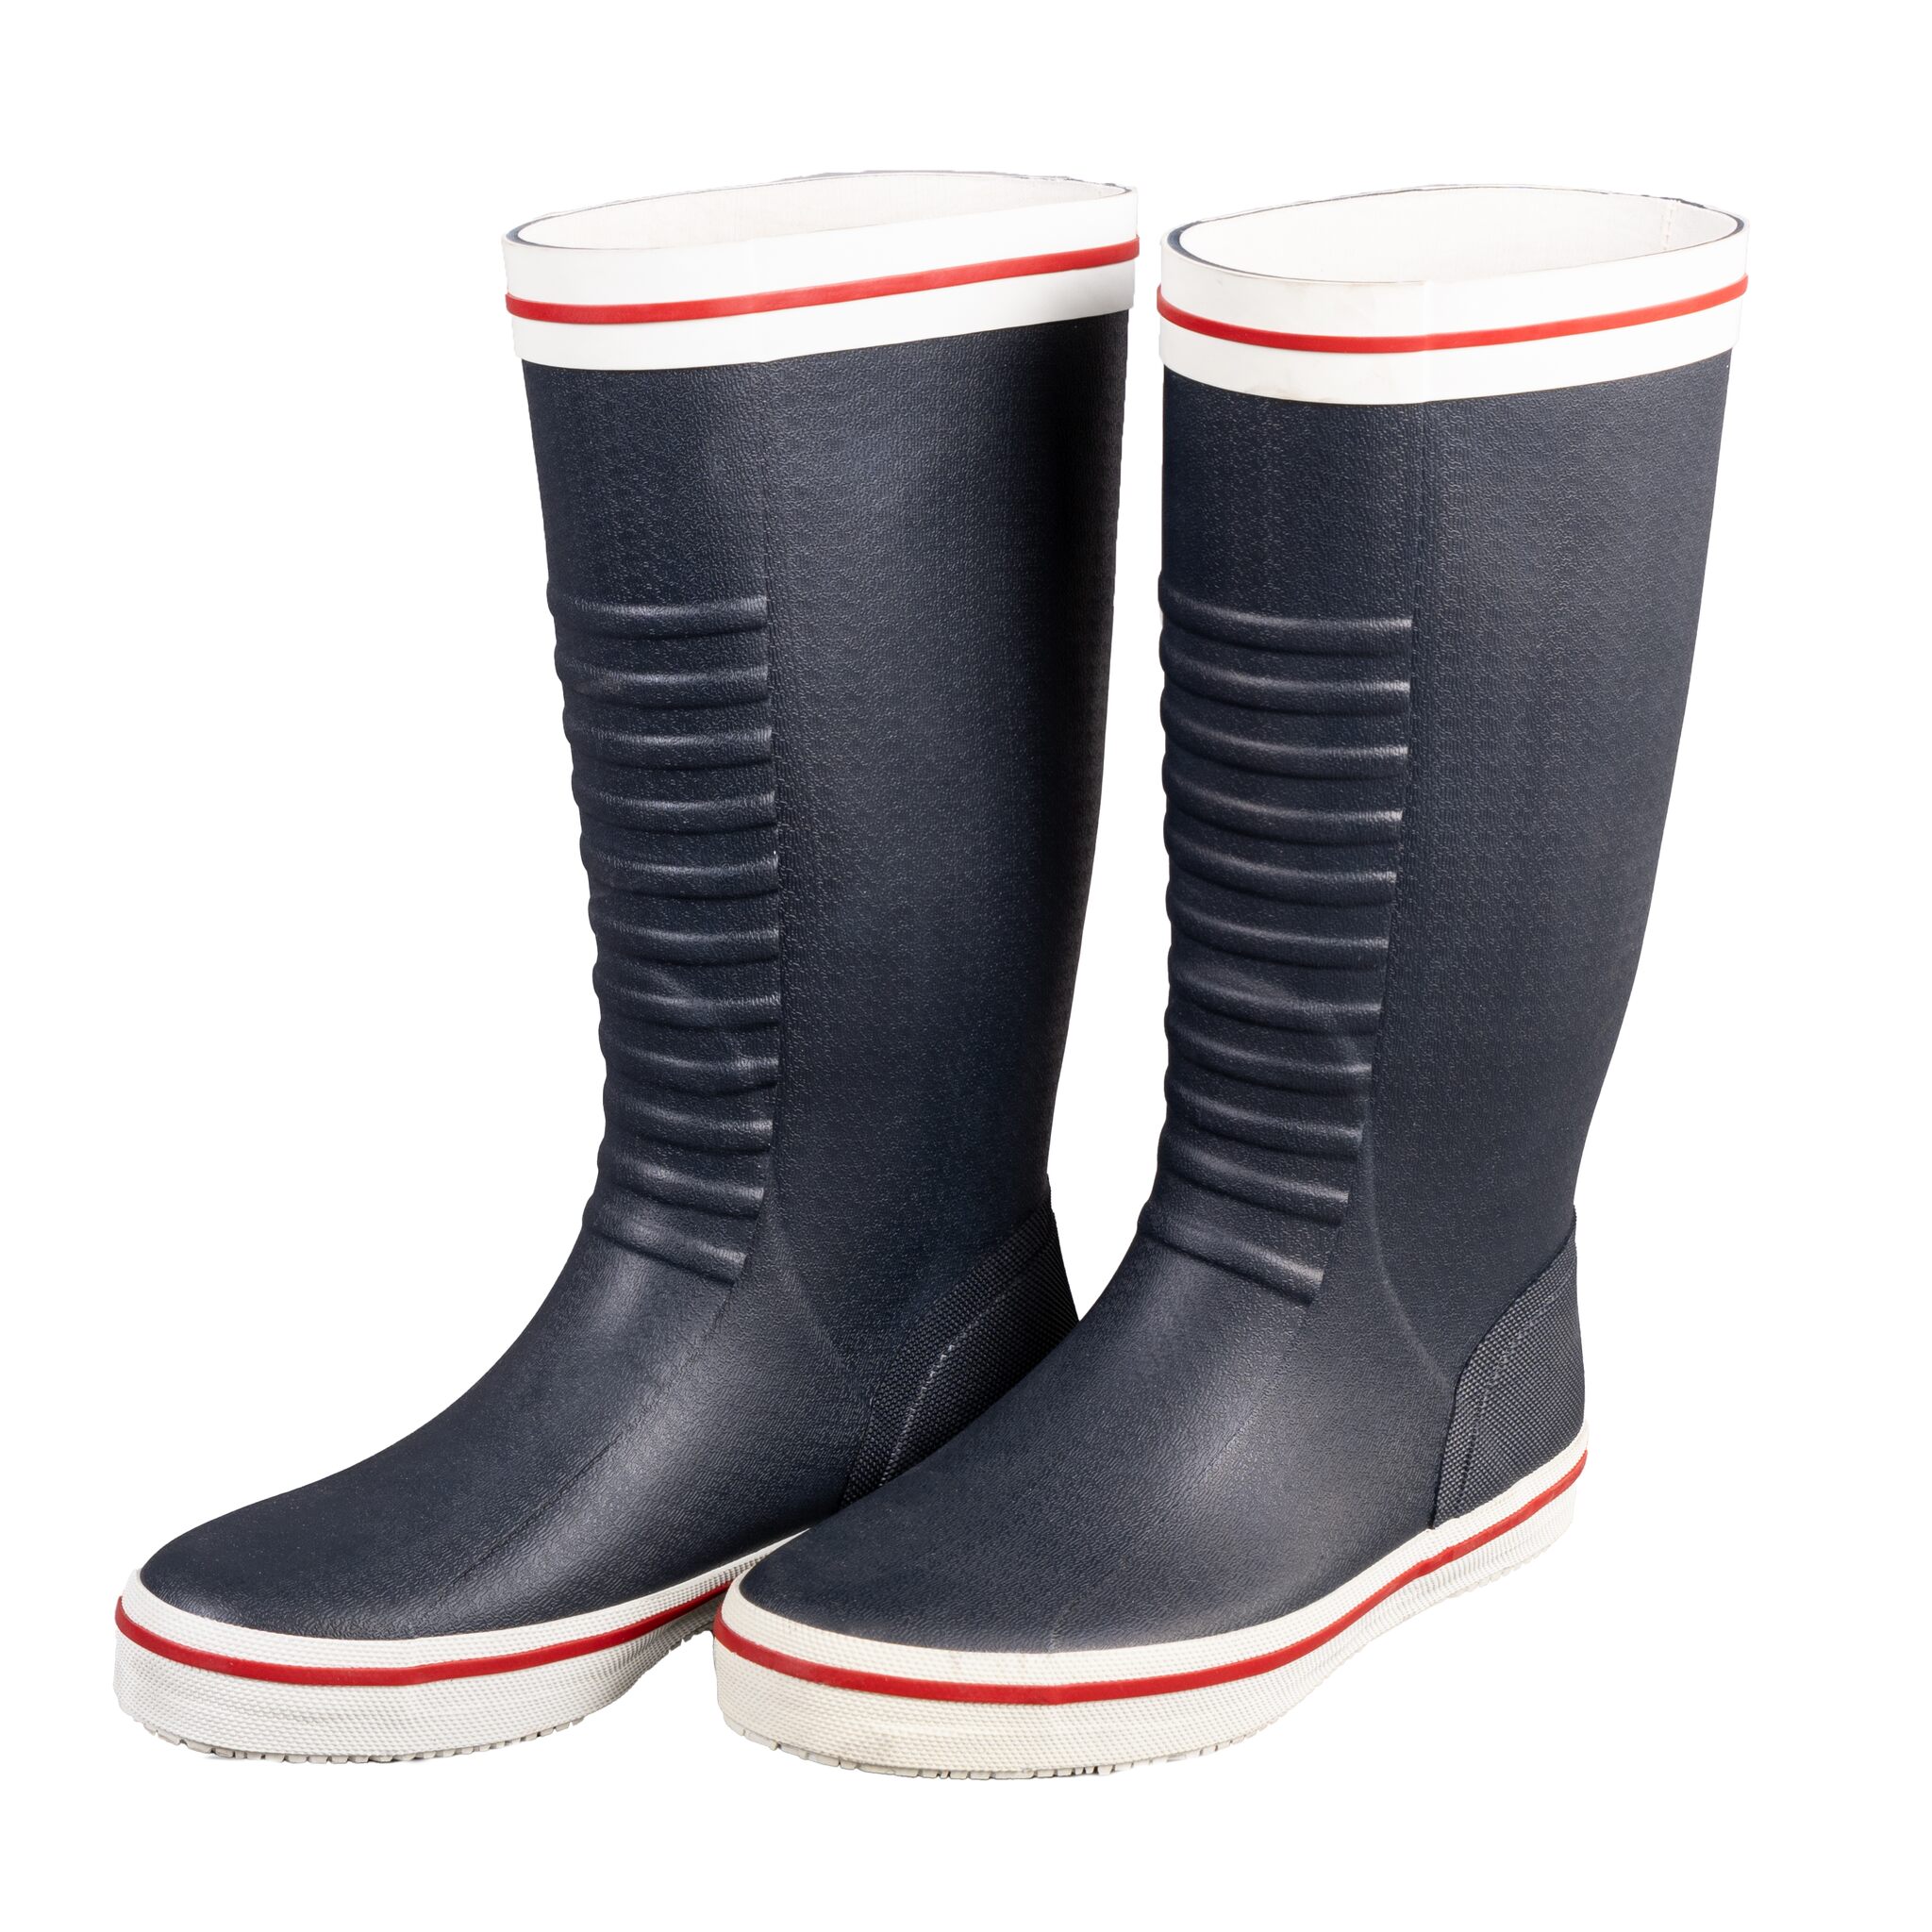 OCEAN pro High Class rubber boots